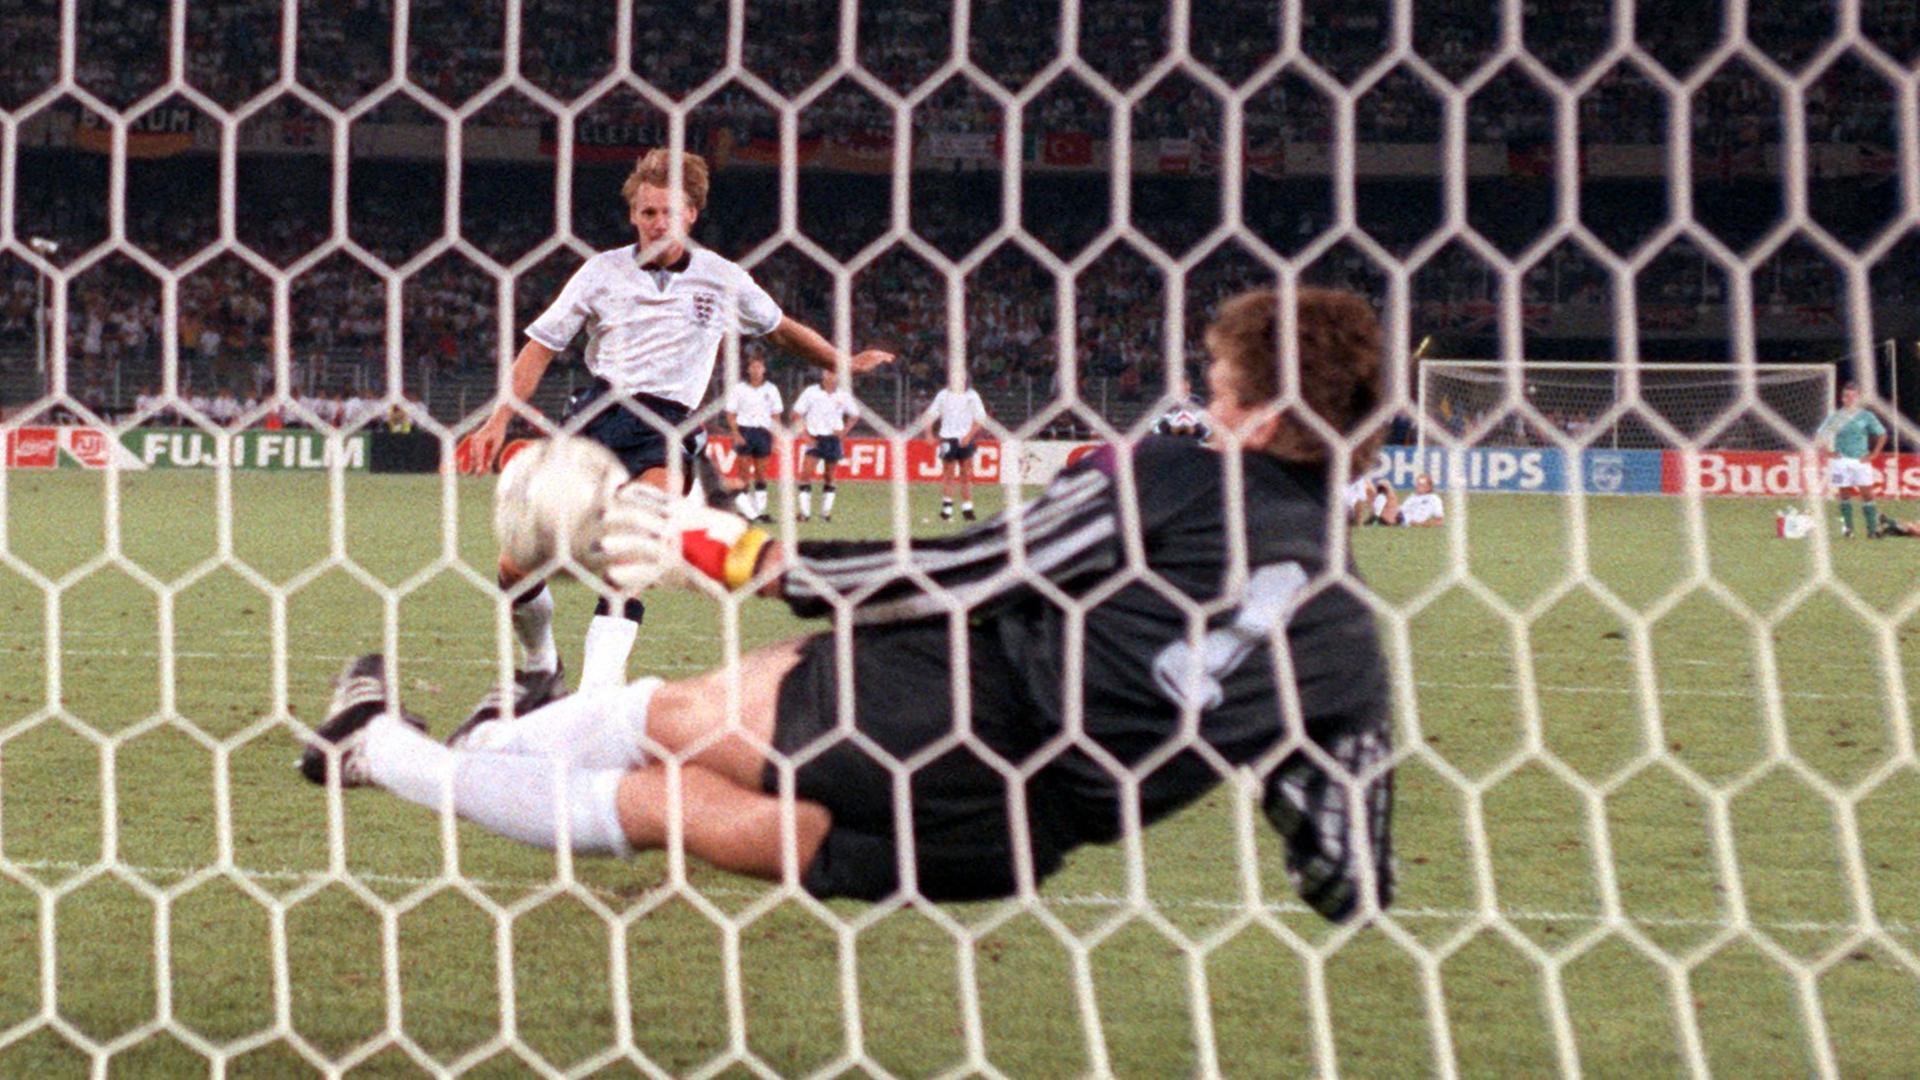 Torhüter Bodo Illgner (vorn) pariert den vom englischen Abwehrspieler Stuart Pearce getretenen Elfmeter. Damit ist die deutsche Fußballnationalmannschaft beim Stand von 3:3 im Elfmeterschießen mit England im Vorteil. Sie gewinnt am 04.07.1990 im Turiner Stadion delle Alpi das Halbfinalspiel der Fußball-WM am Ende mit 4:3. Nach der Verlängerung hatte es 1:1 gestanden.